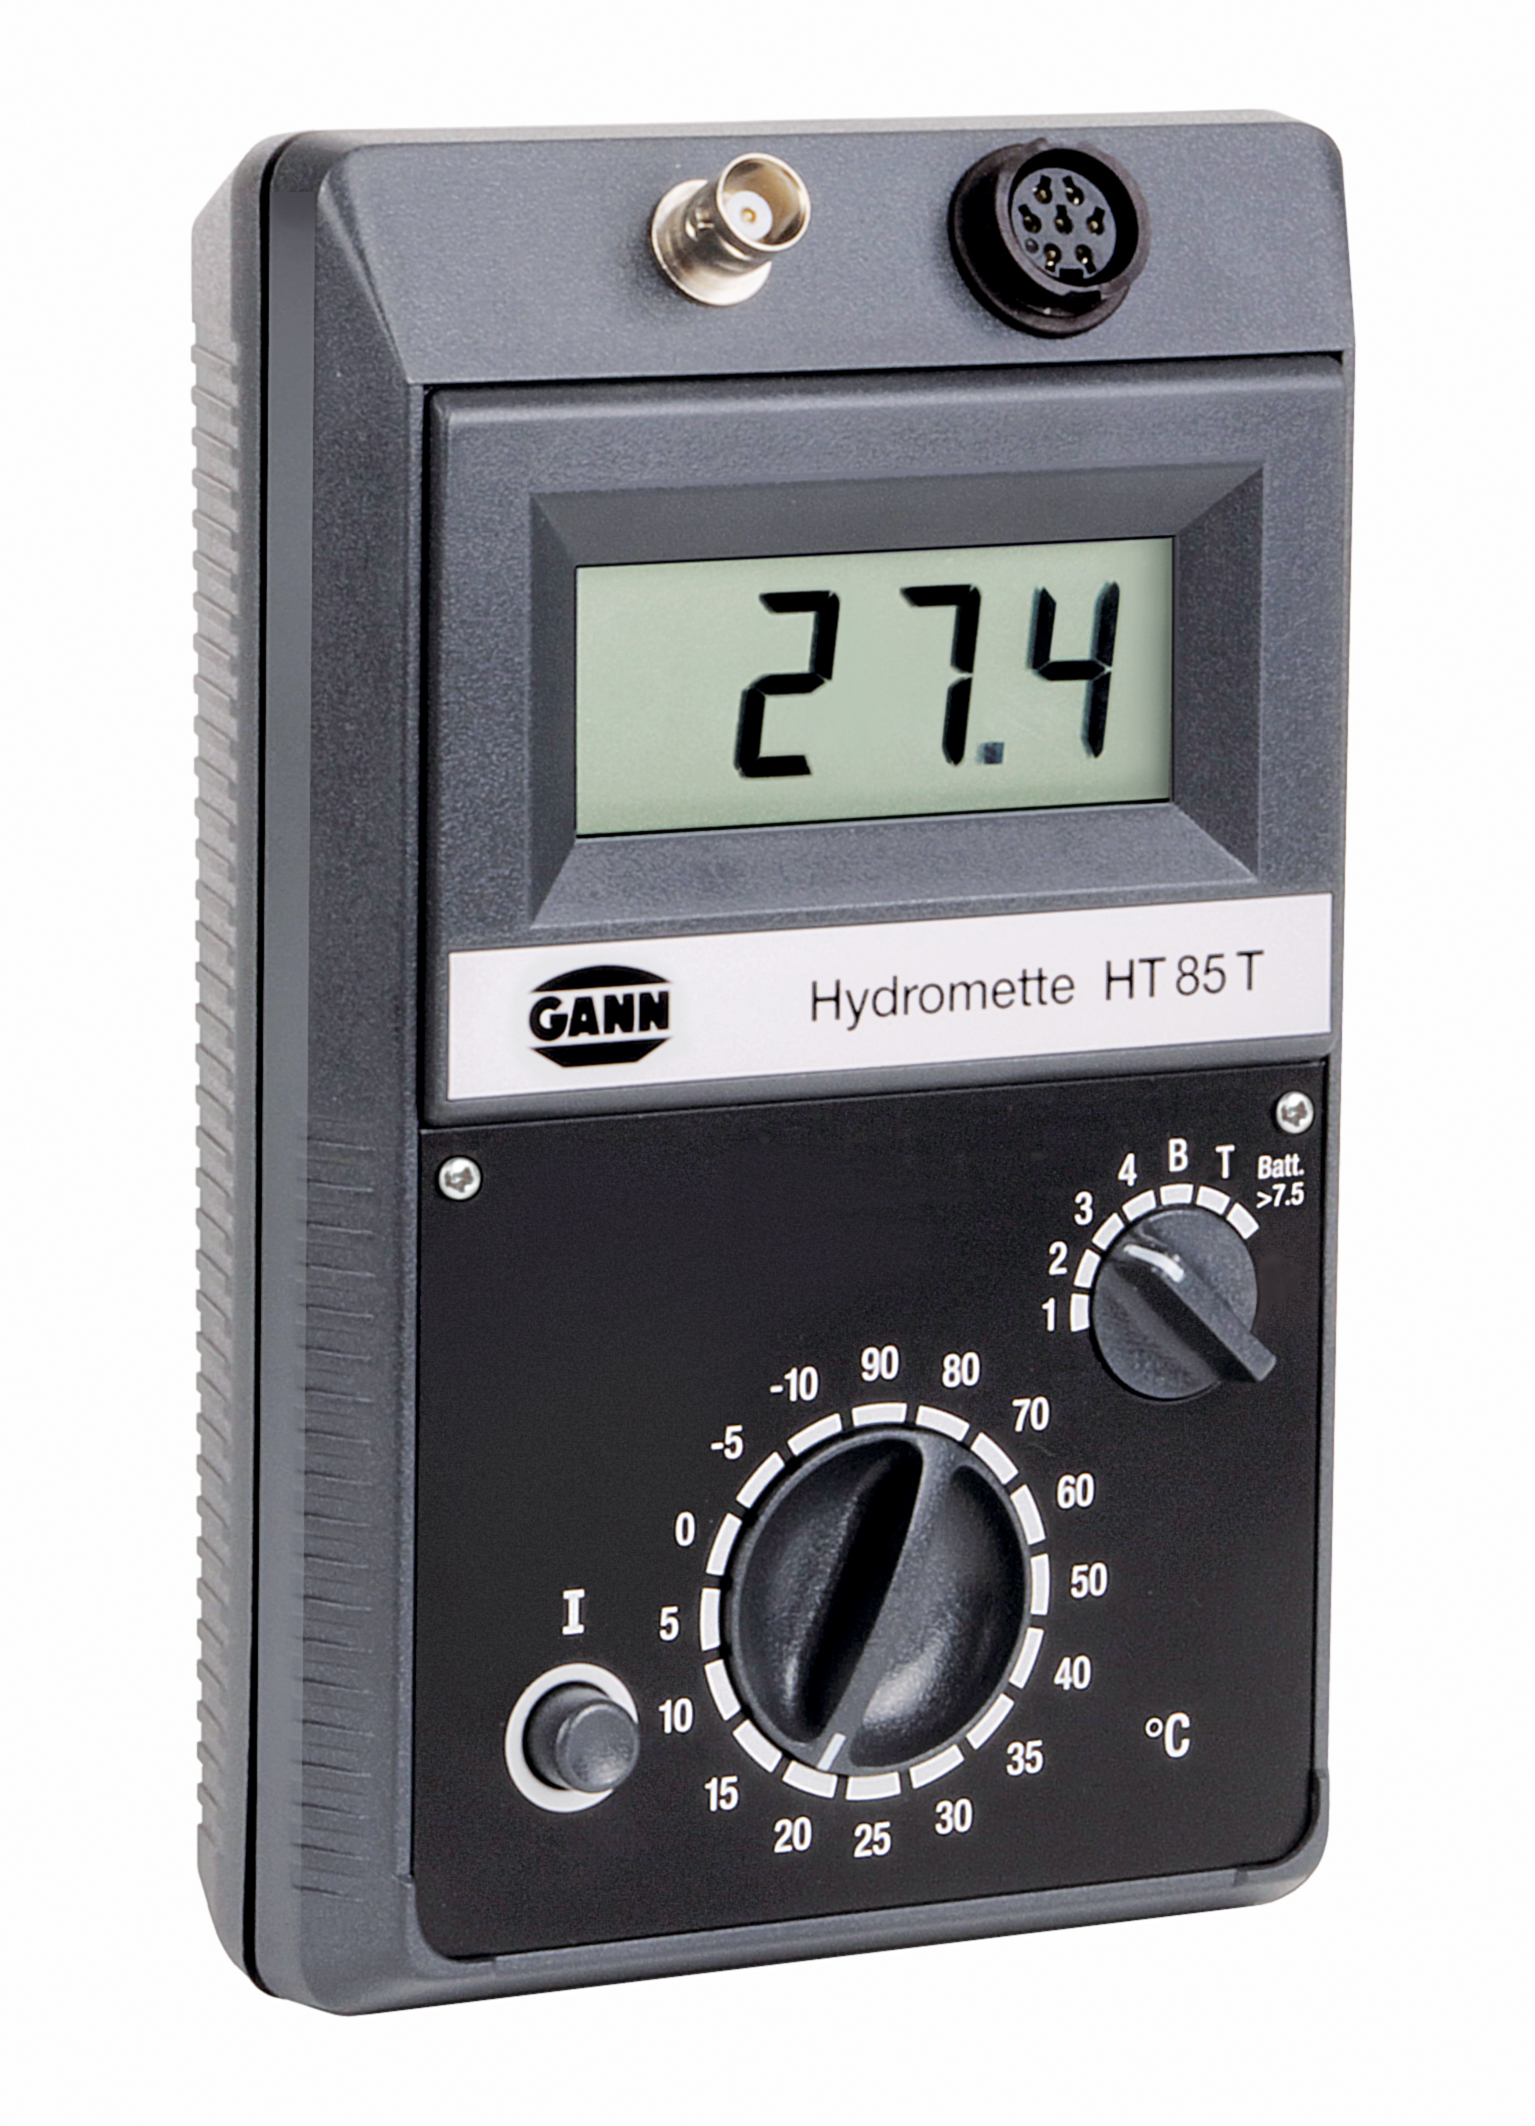 Hydromette HT 85 T - SET 1: mit Einschlag-Elektrode M20